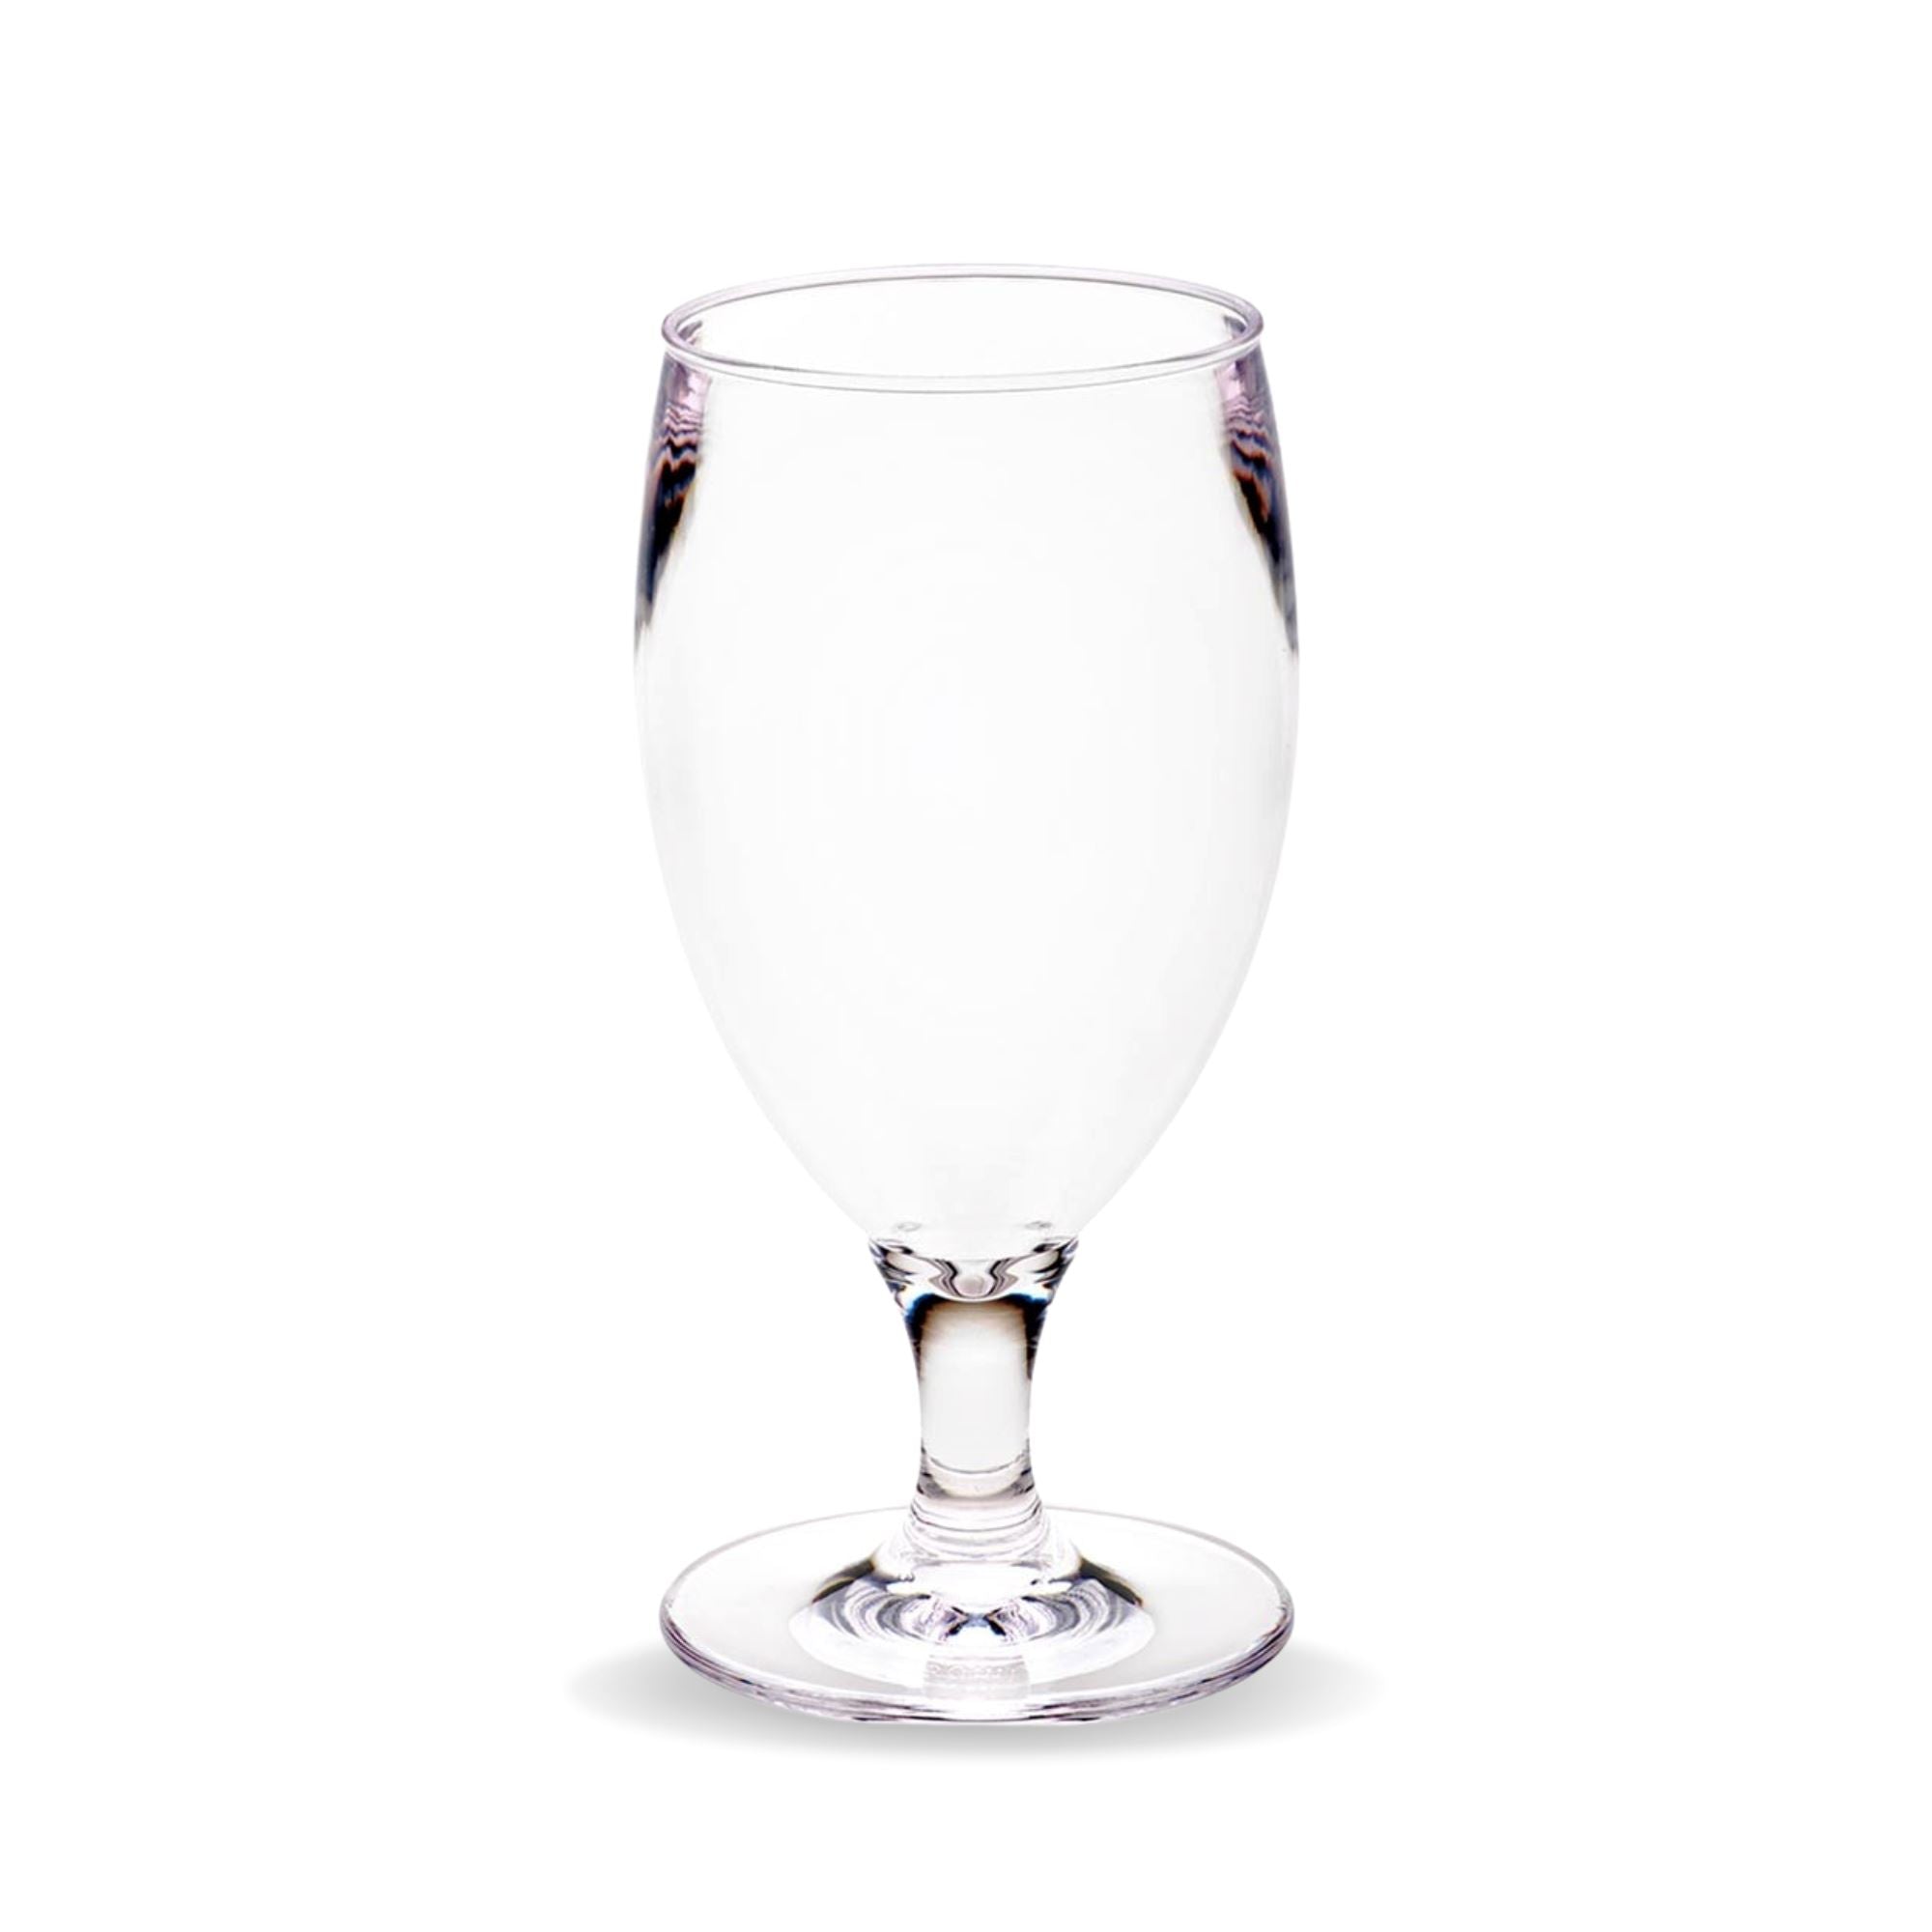 Unbreakable Goblet Glasses 380ml - Set of 6 Beer Glasses D-STILL Drinkware 